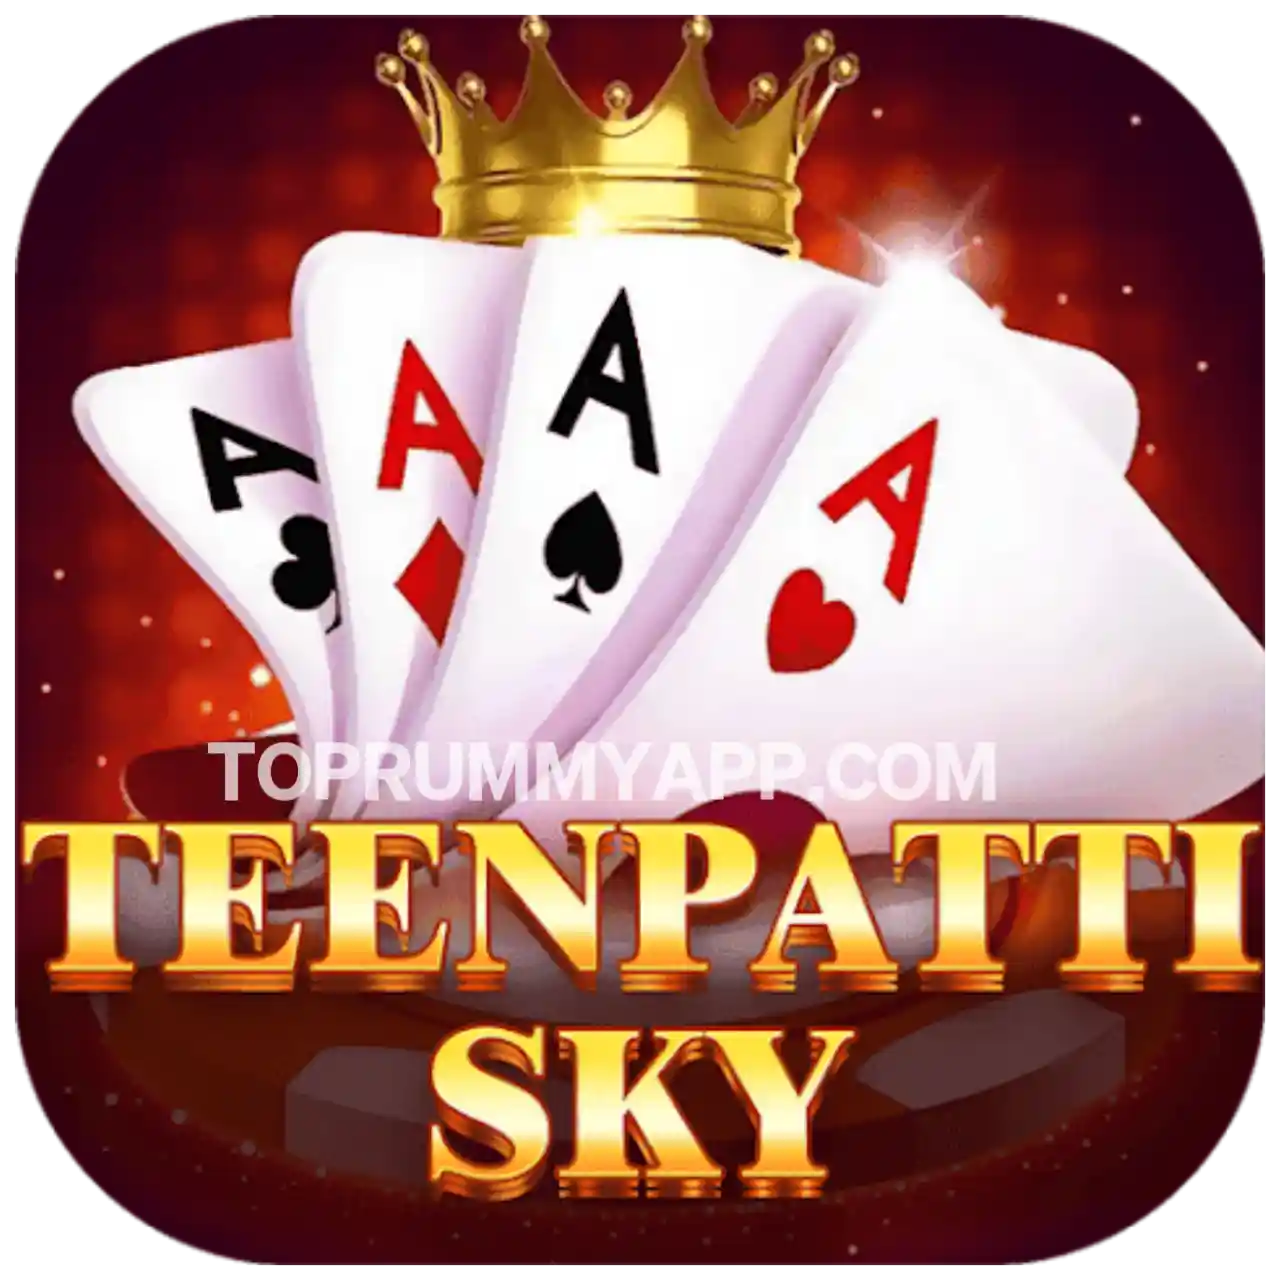 Teen Patti Sky Apk Download - Top 5 Teen Patti App List